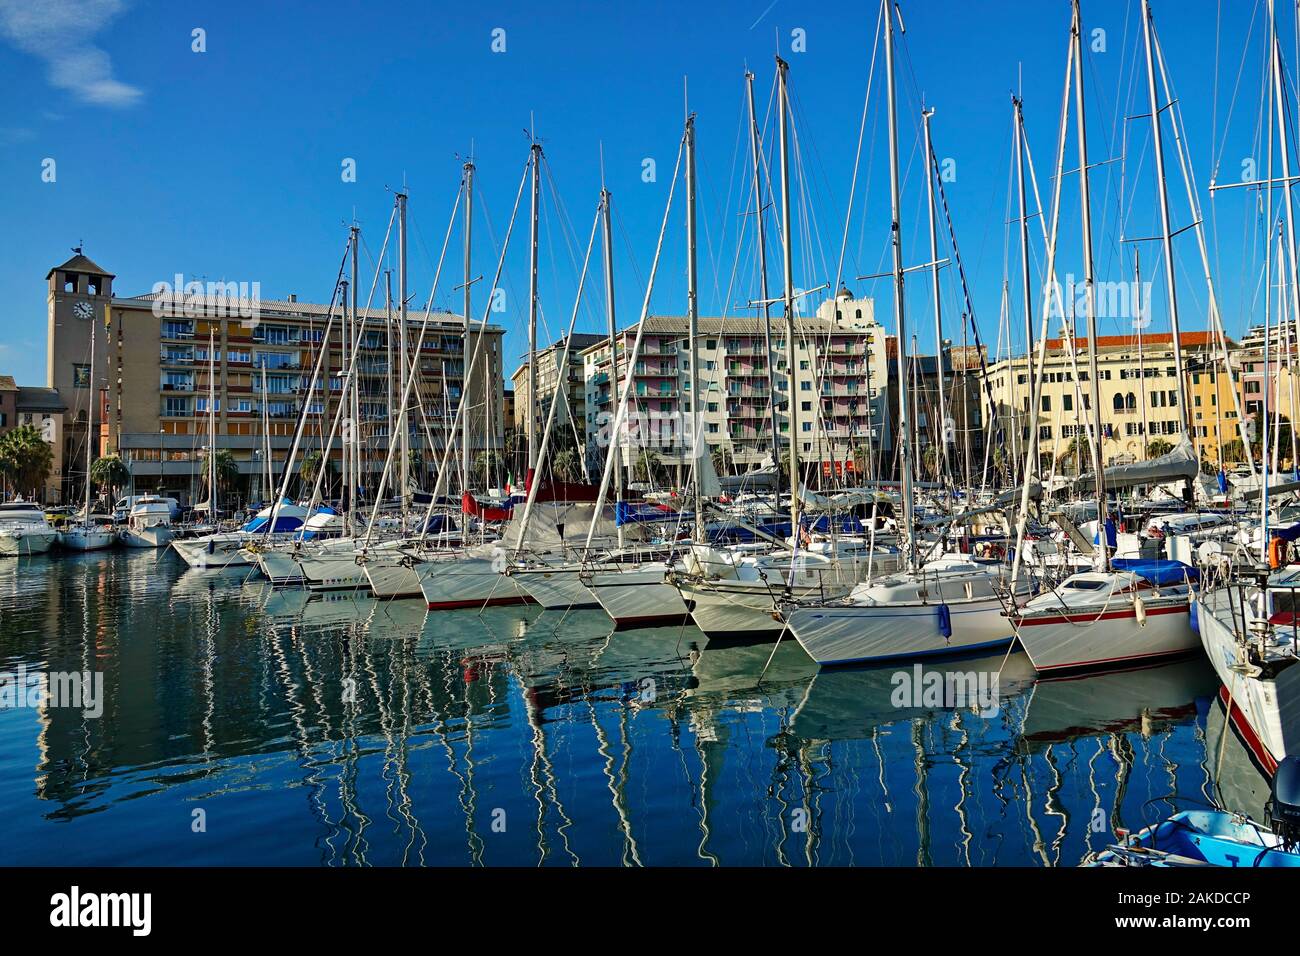 Rues de la région de Savone et de voiliers dans le port. Savona, Italie - Janvier 2020 Banque D'Images